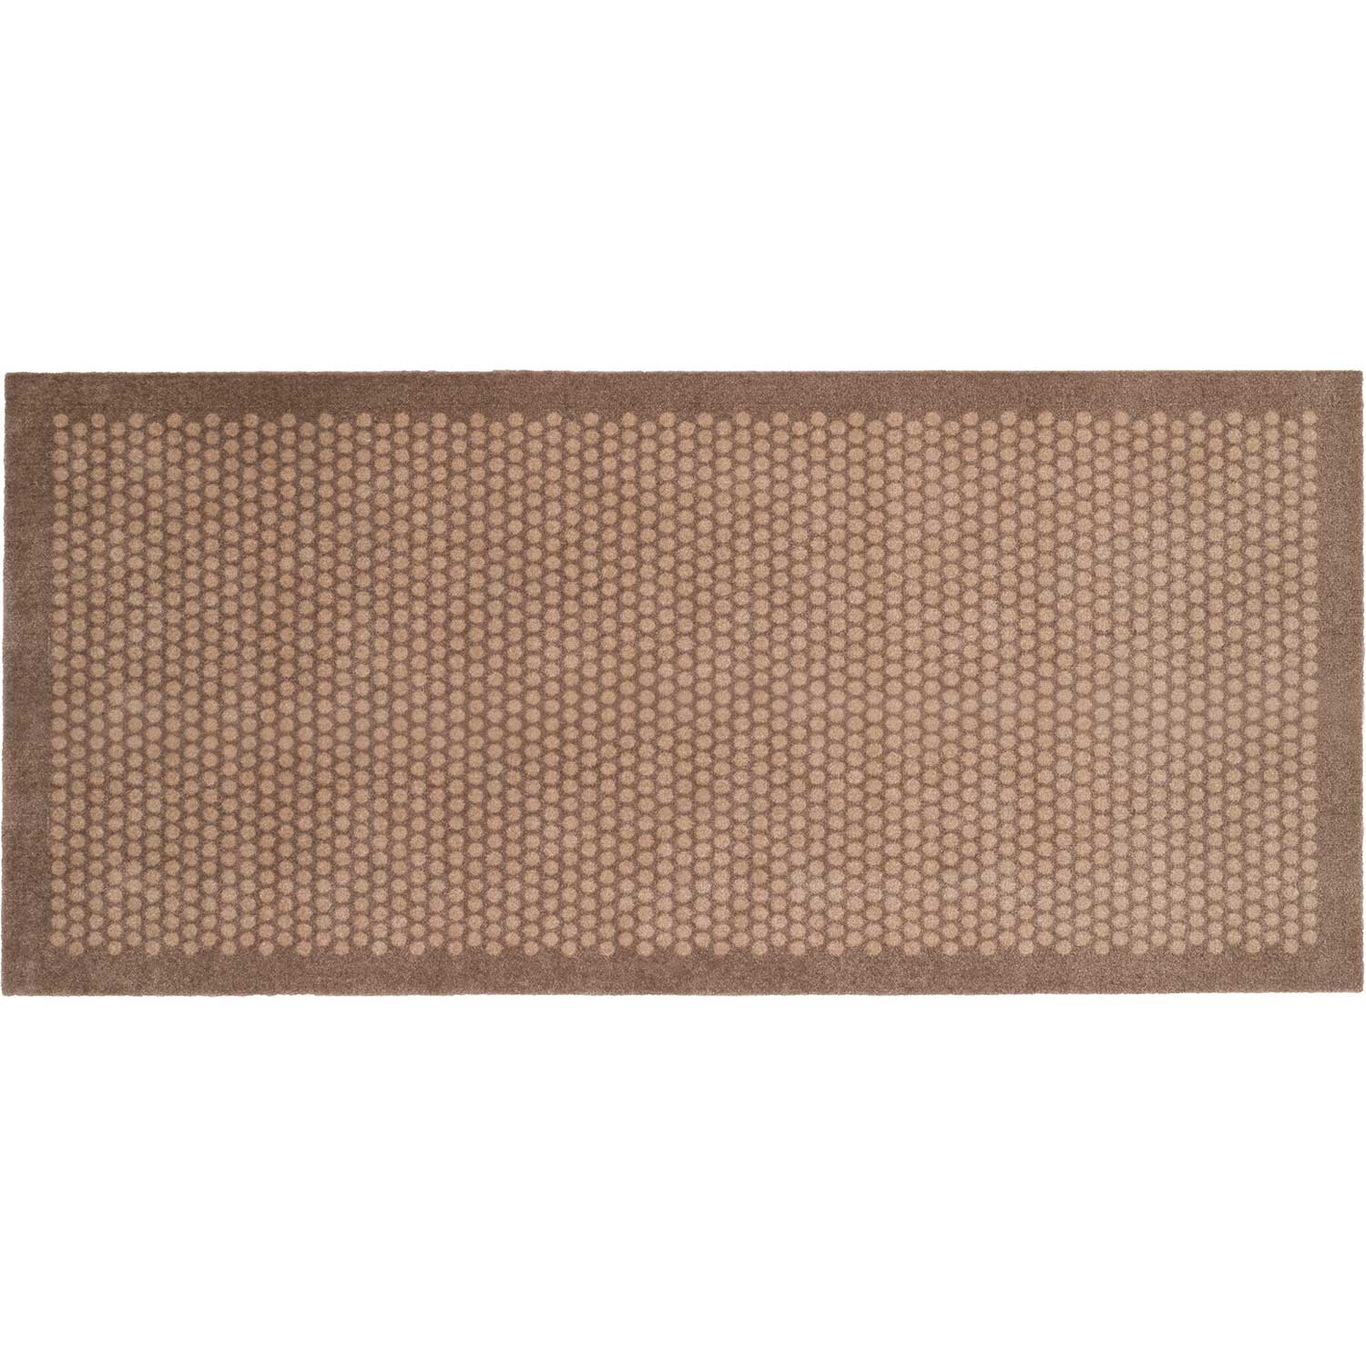 Dot Doormat 90x200cm, Sand